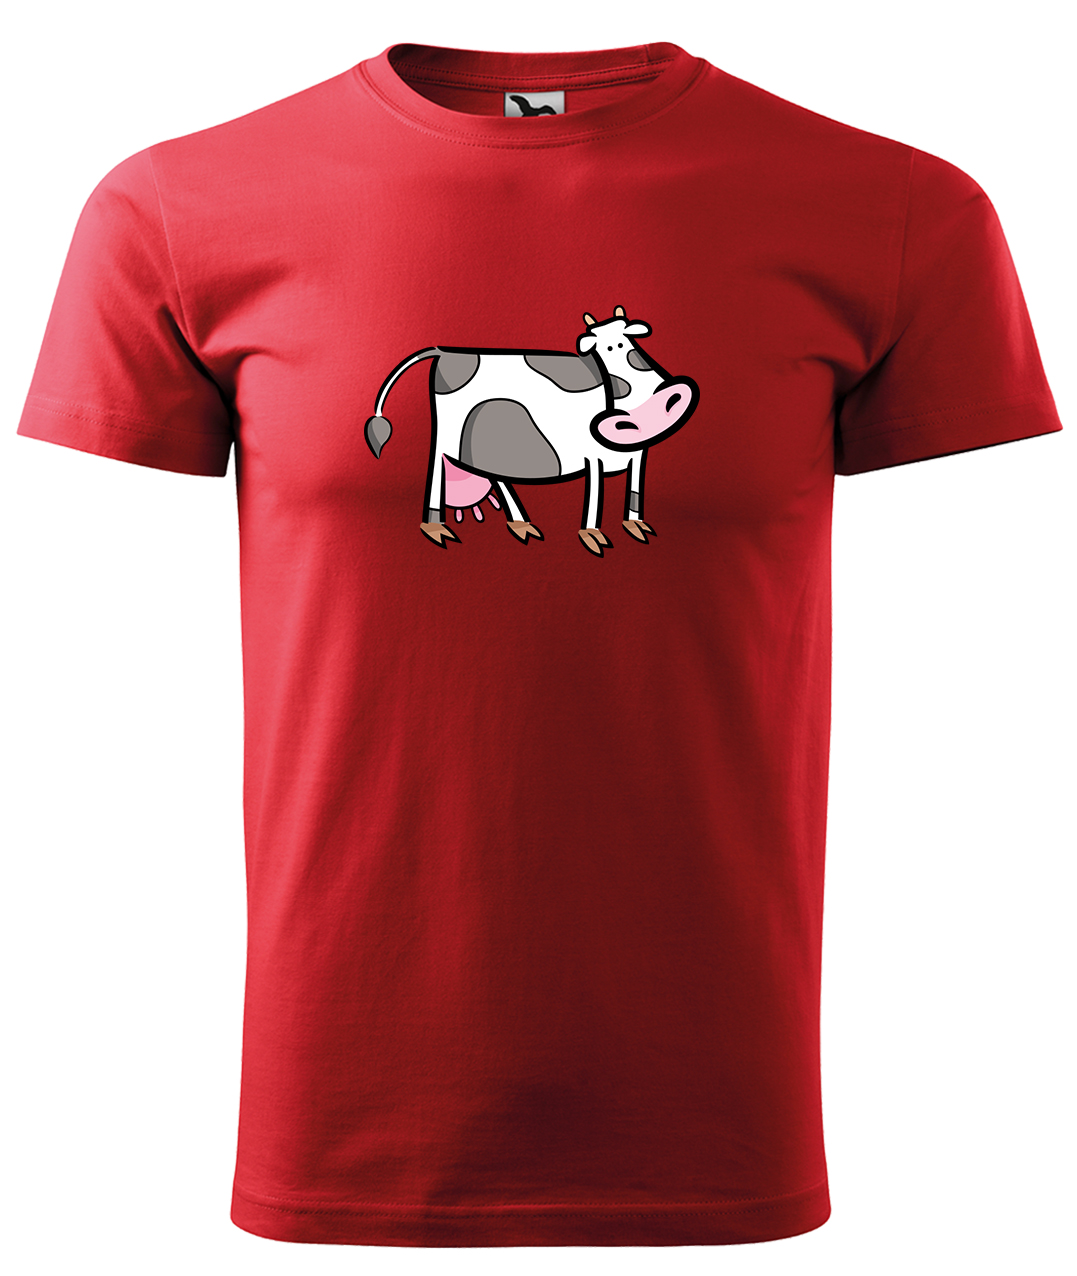 Dětské tričko s krávou - Kravička Velikost: 6 let / 122 cm, Barva: Červená (07), Délka rukávu: Krátký rukáv